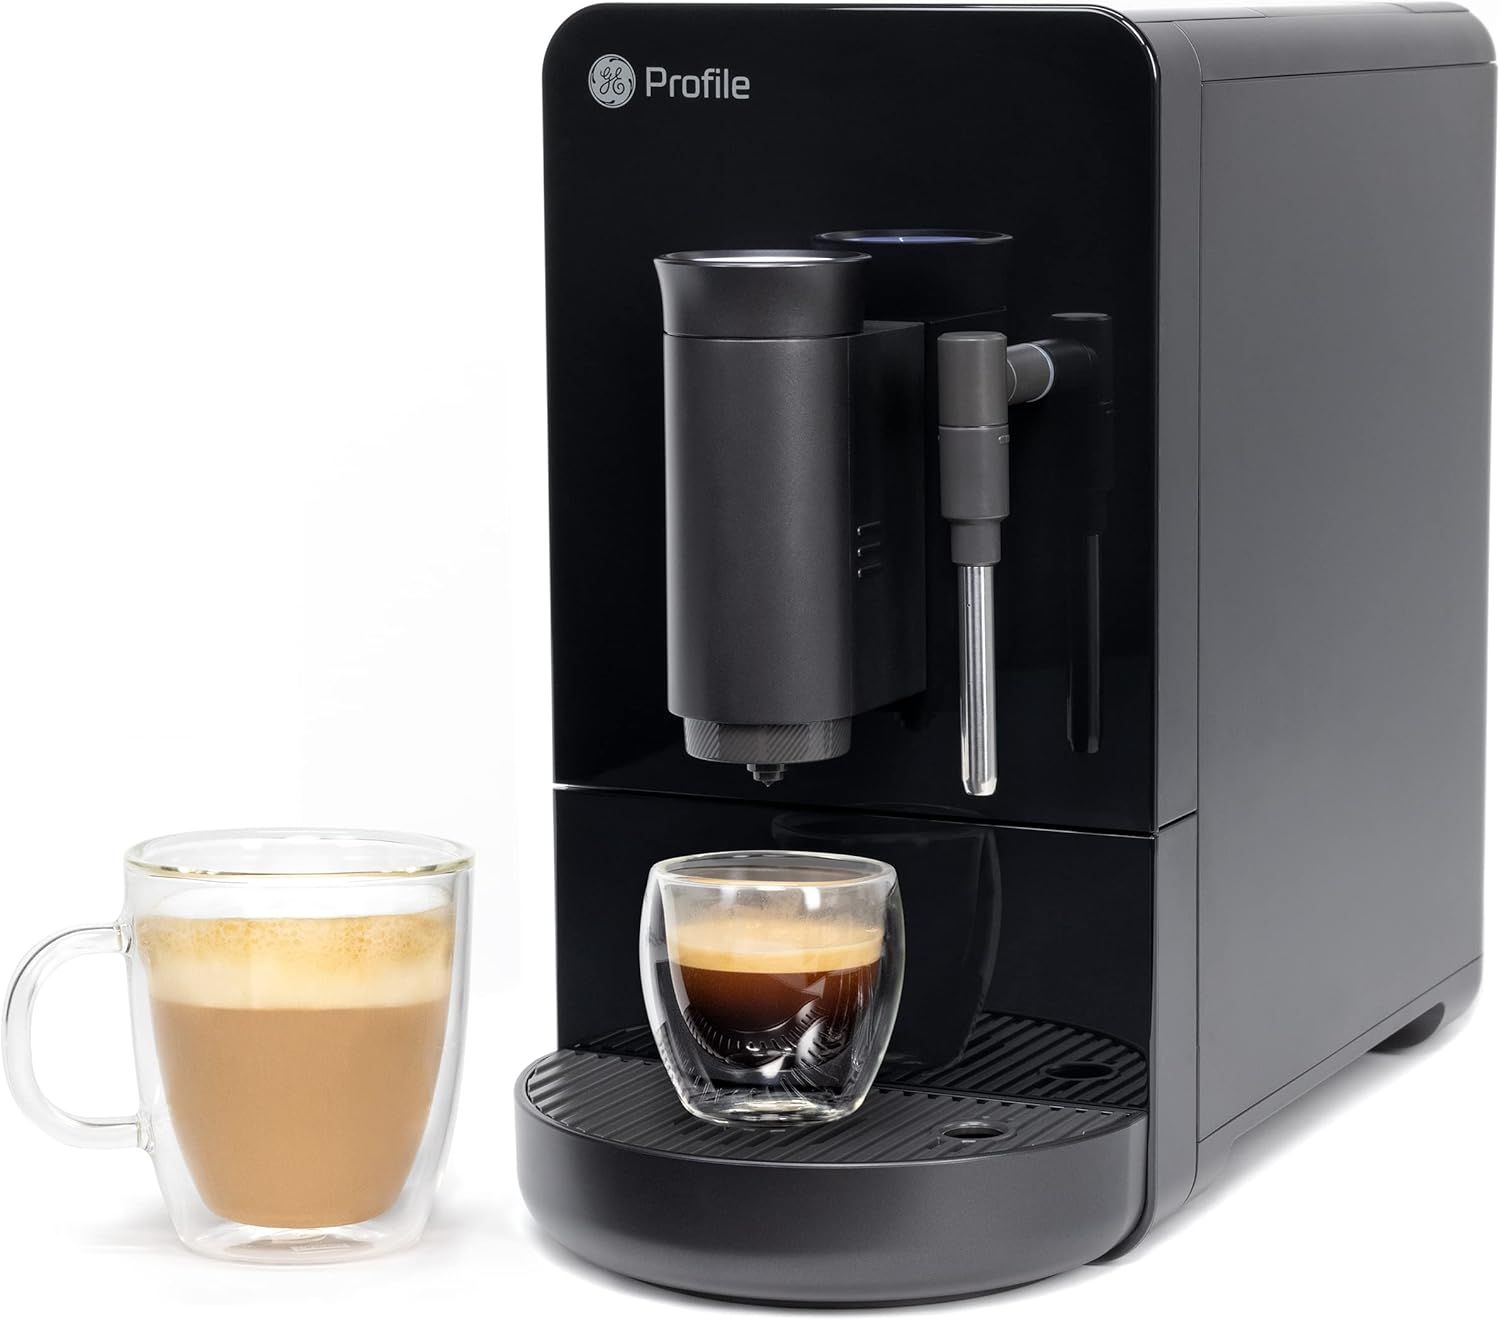 GE Profile Automatic Espresso Machine + Milk Frother | Brew in 90 Seconds | 20 Bar Pump Pressure ... | Amazon (US)